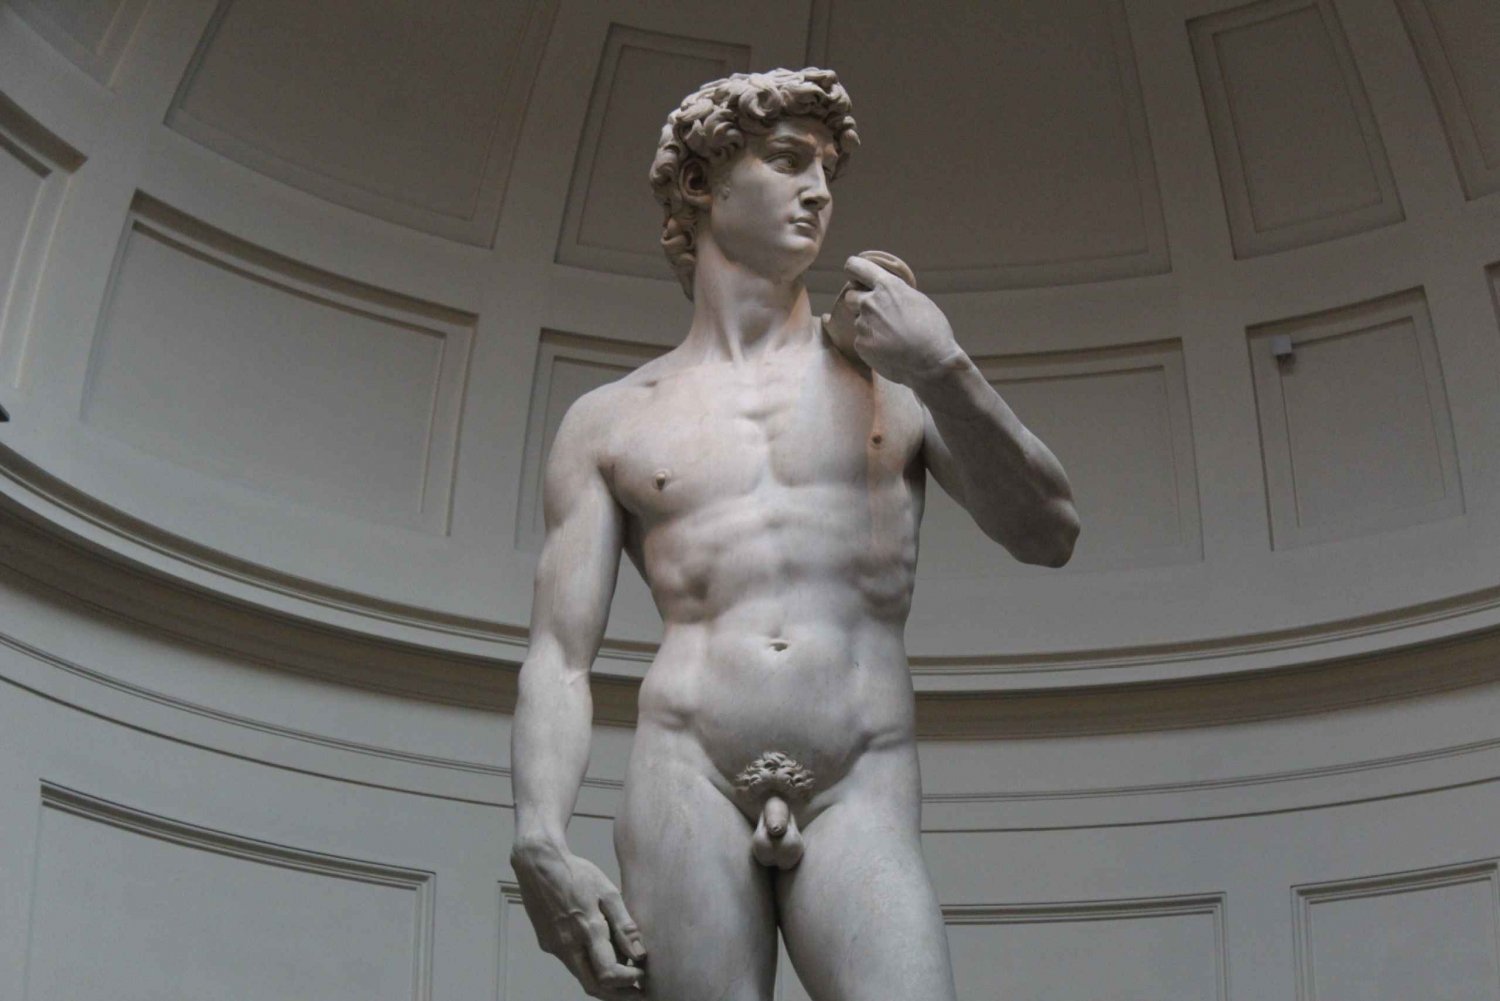 Florenz: Accademia & Bargello Museum Ultimative David Tour